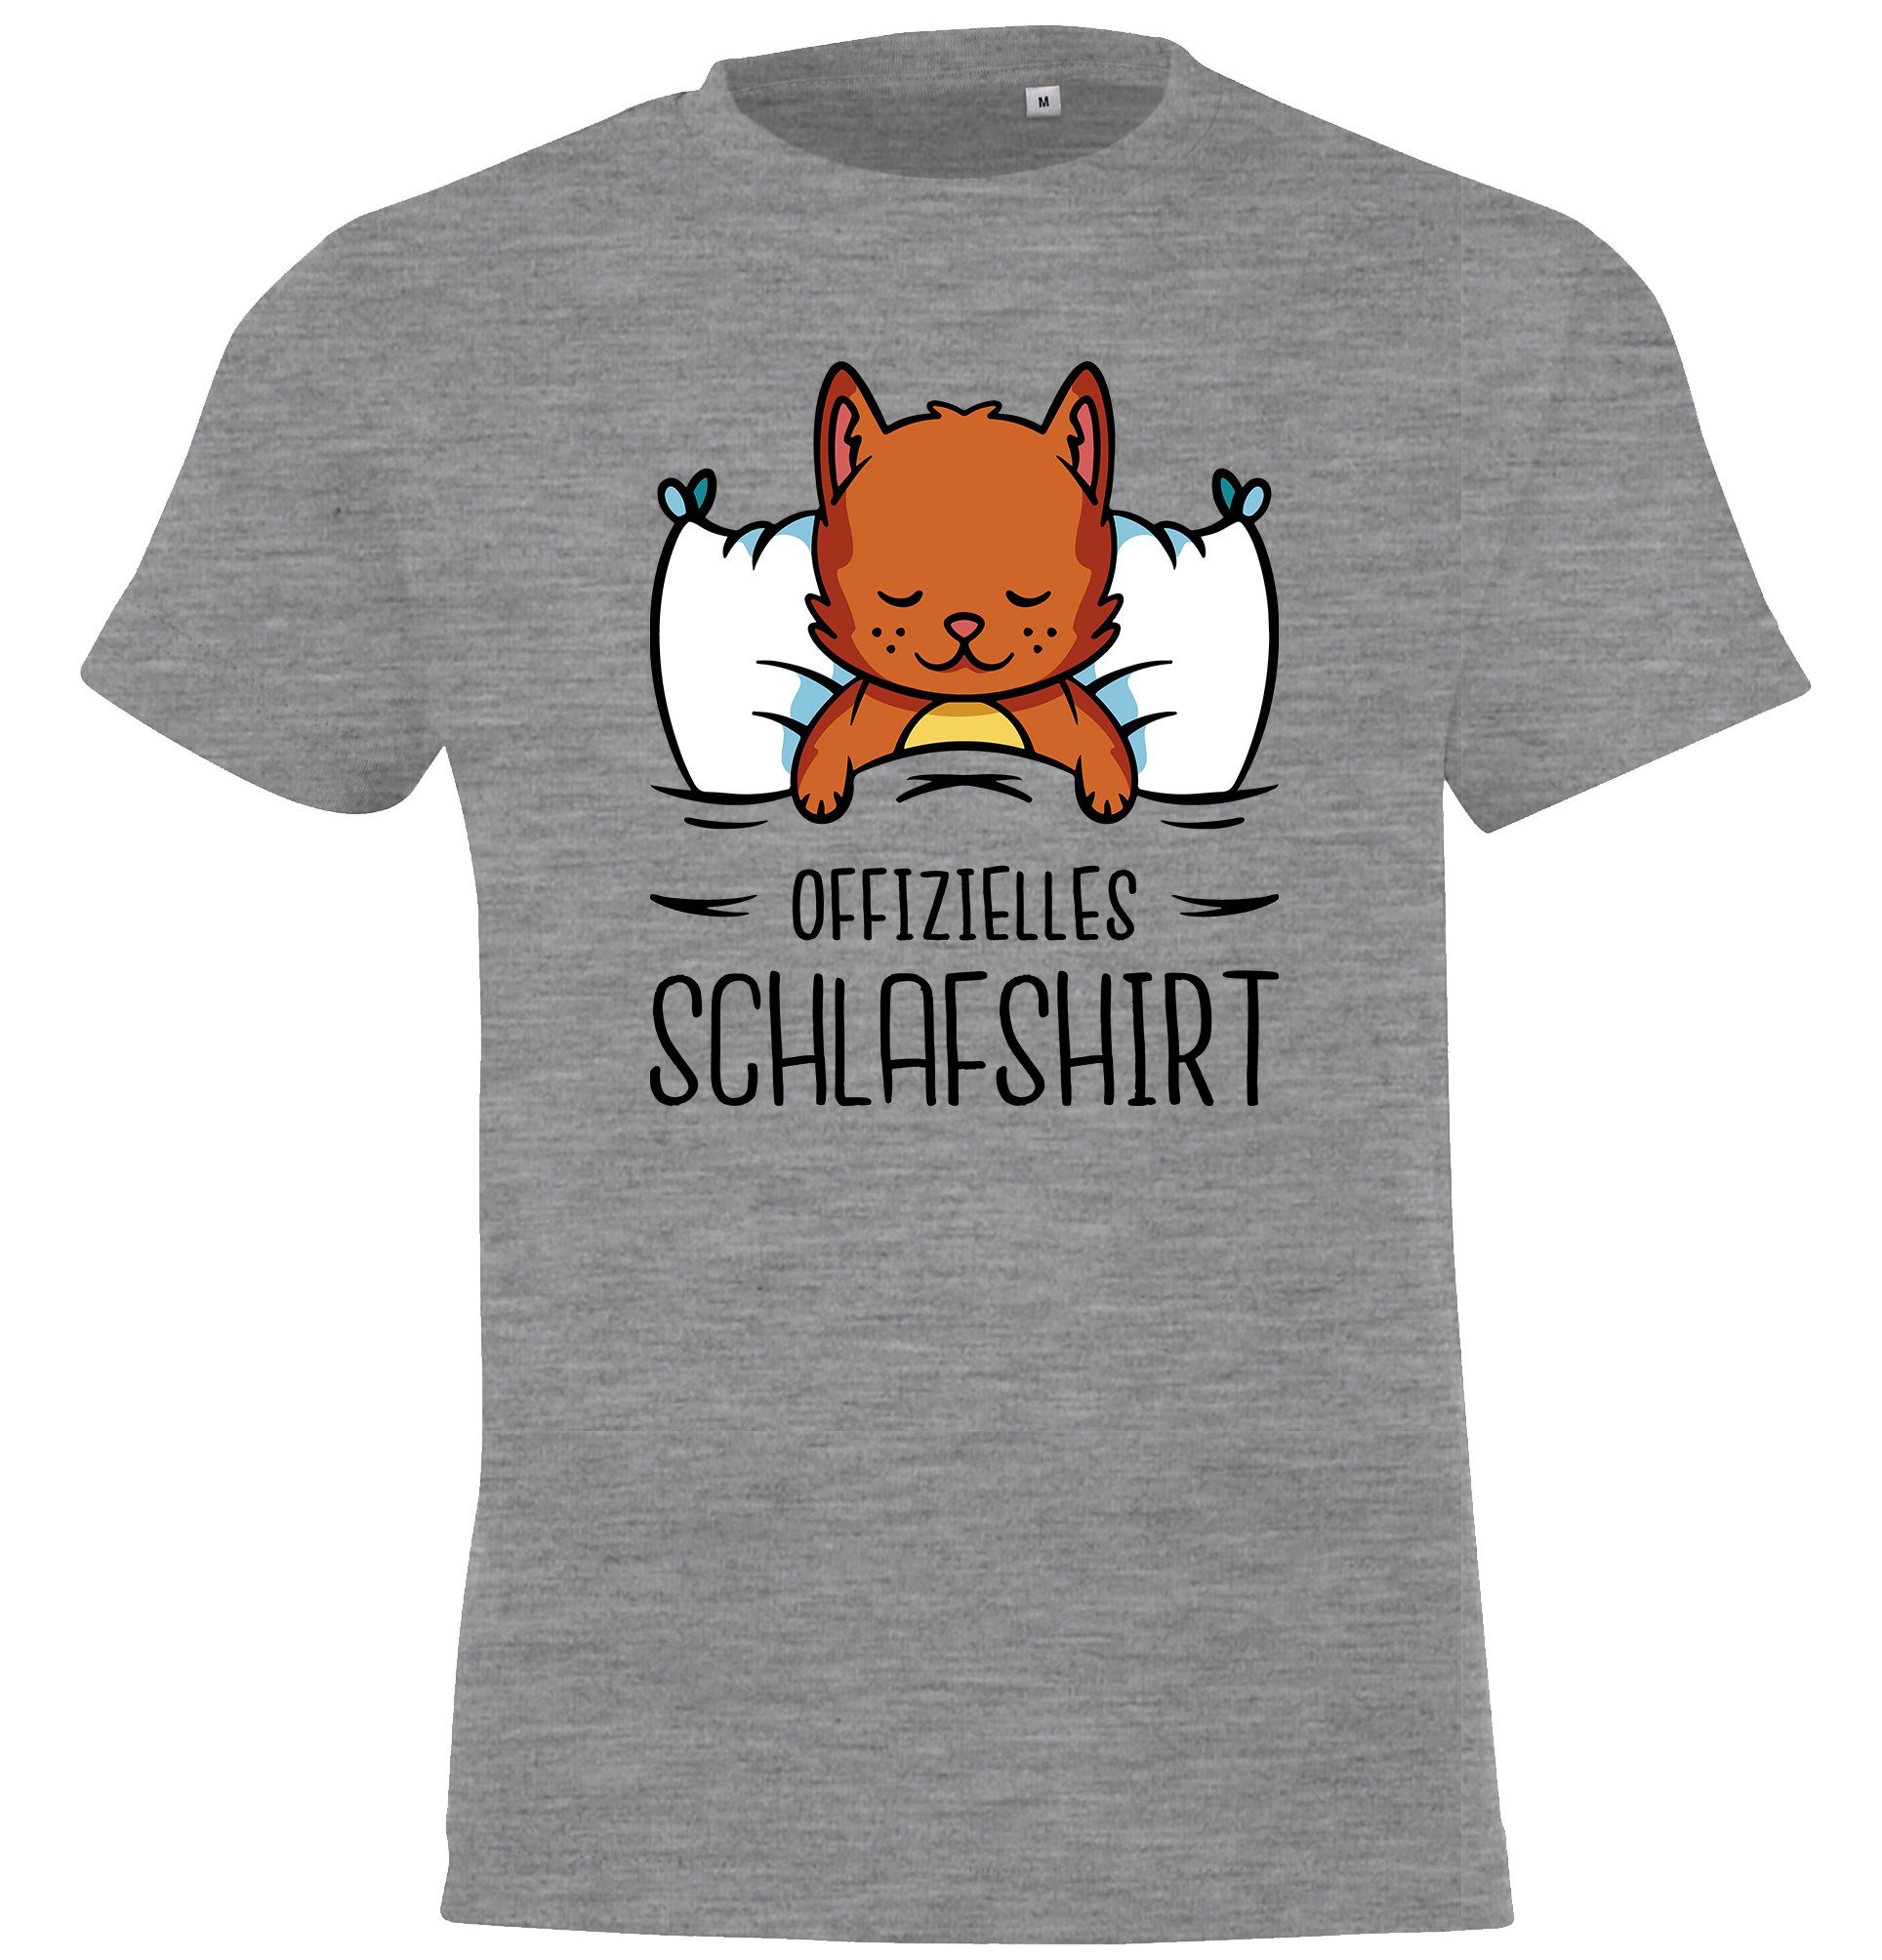 Youth Designz T-Shirt Offizielles Schlafshirt mit Katze Kinder Shirt für Jungen und Mädchen mit lustigem Frontprint Grau